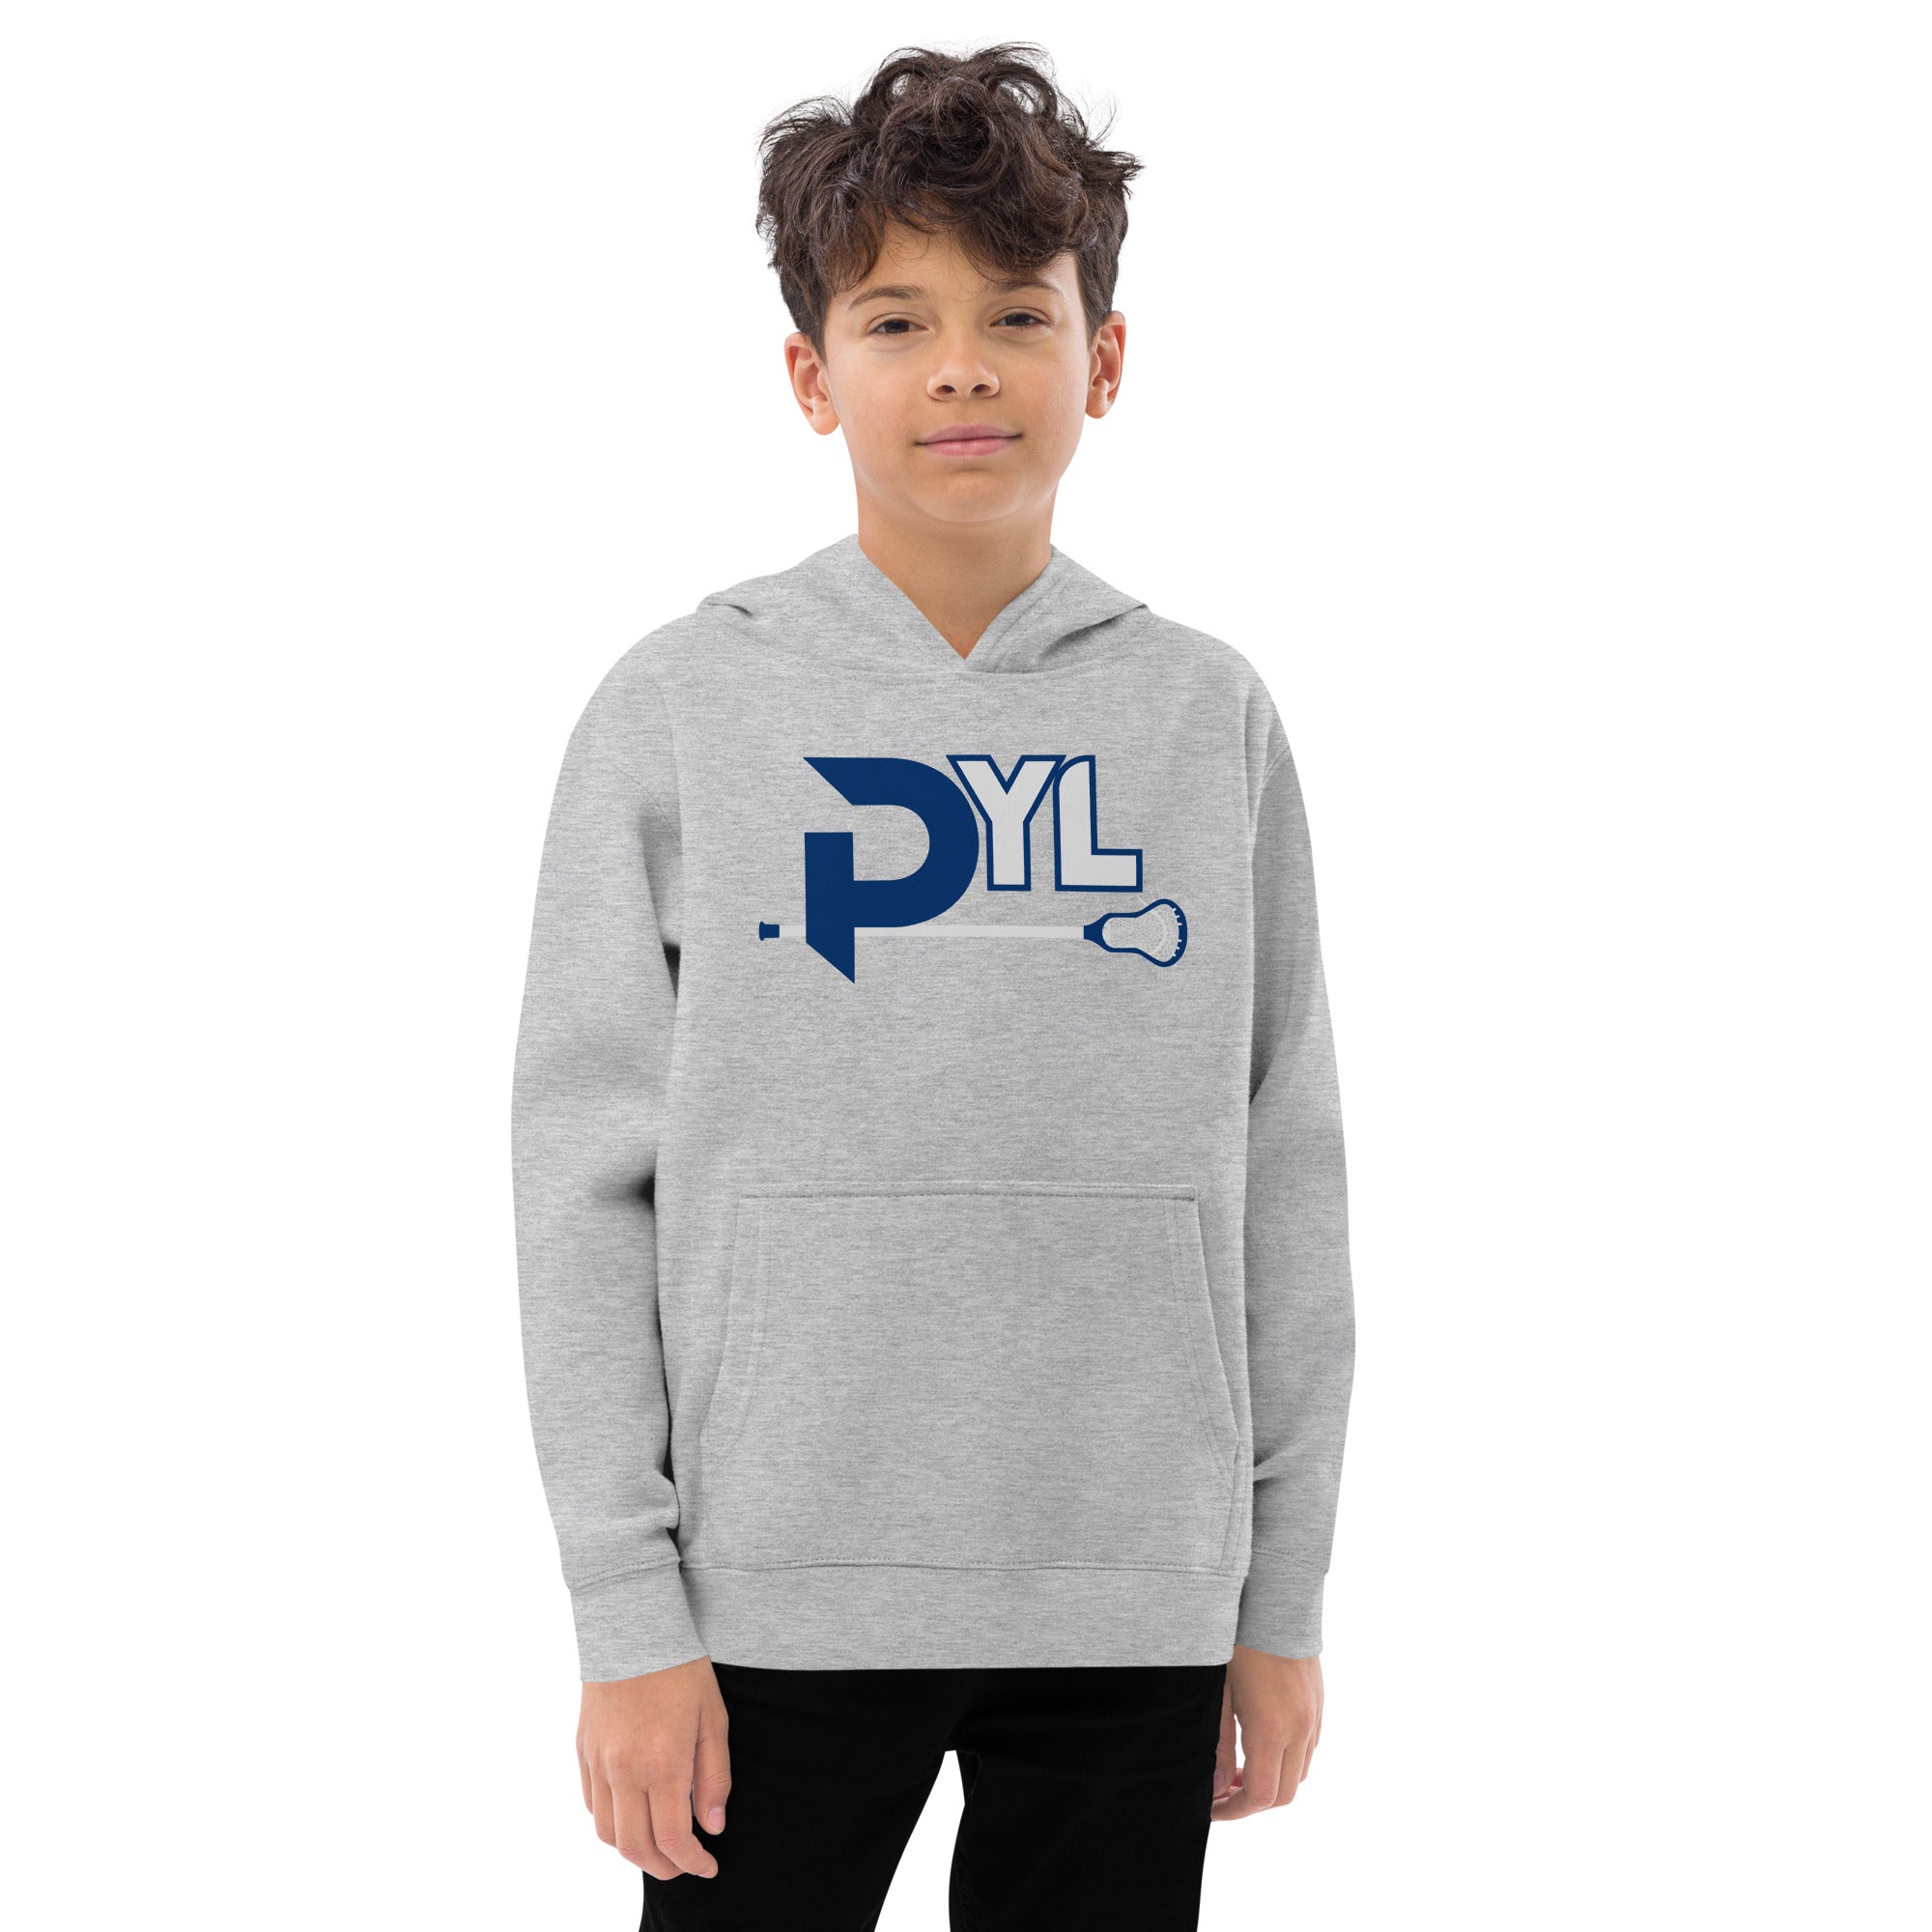 PYL Youth fleece hoodie